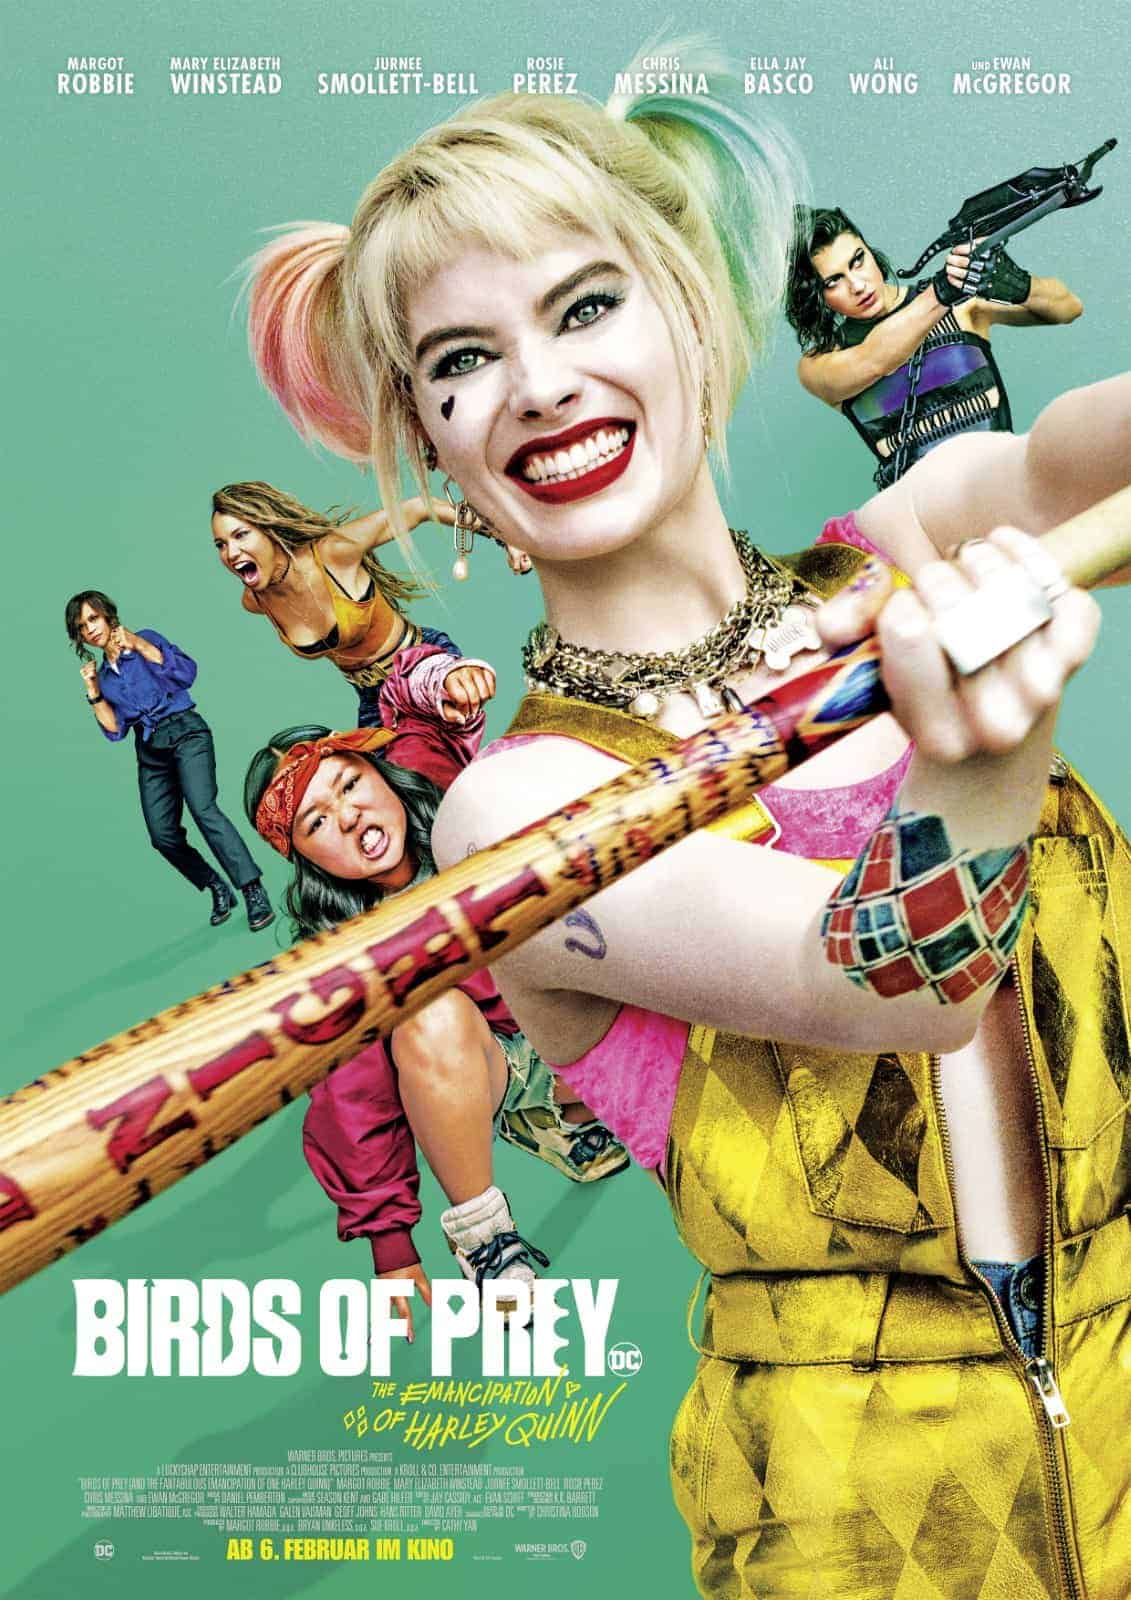 Harley Quinn Birds of Prey 2020